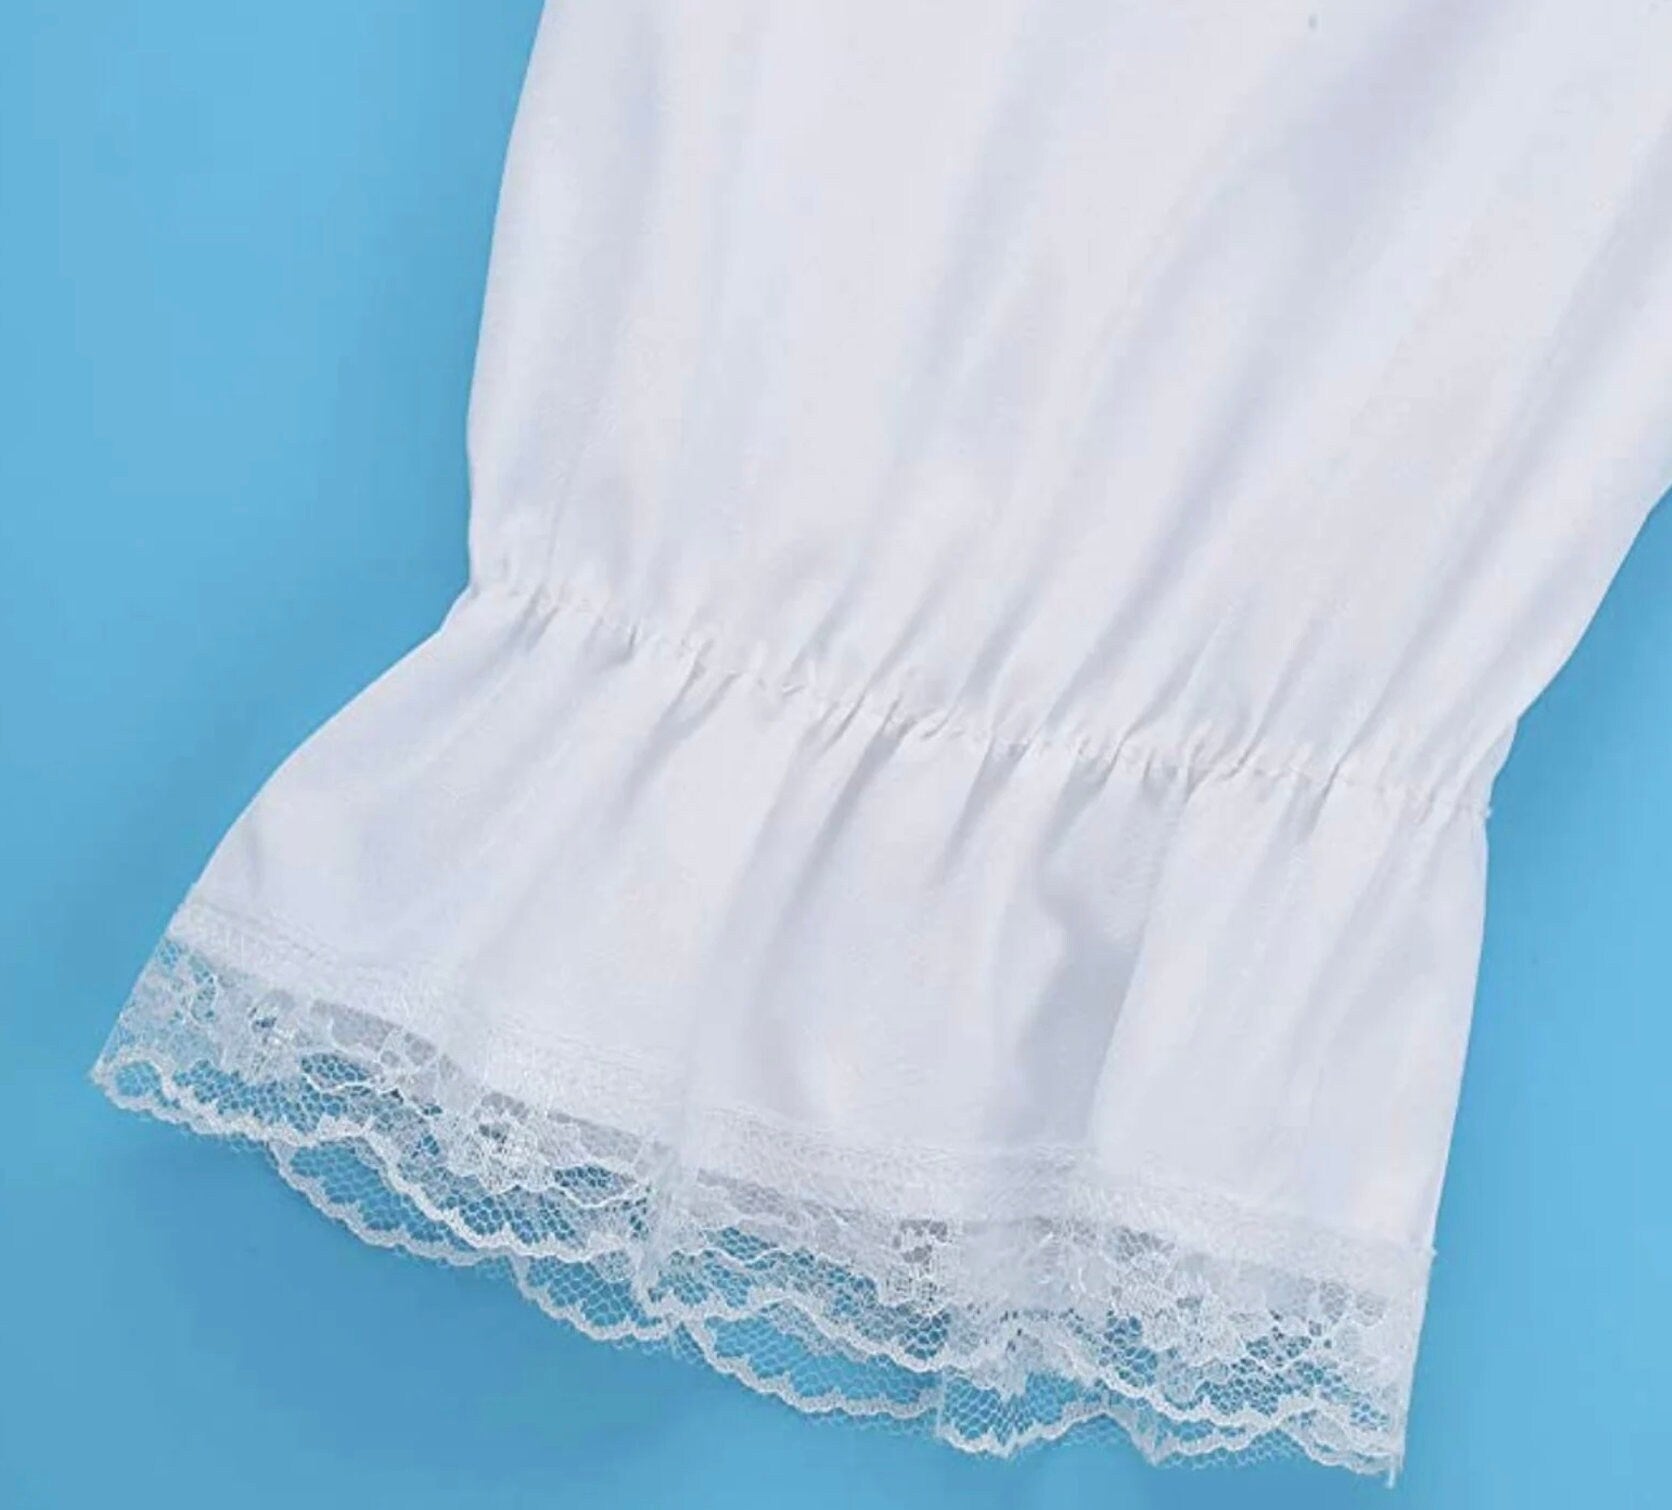 Ladies' Undergarments: Bloomers, Pantaloons, or Drawers?